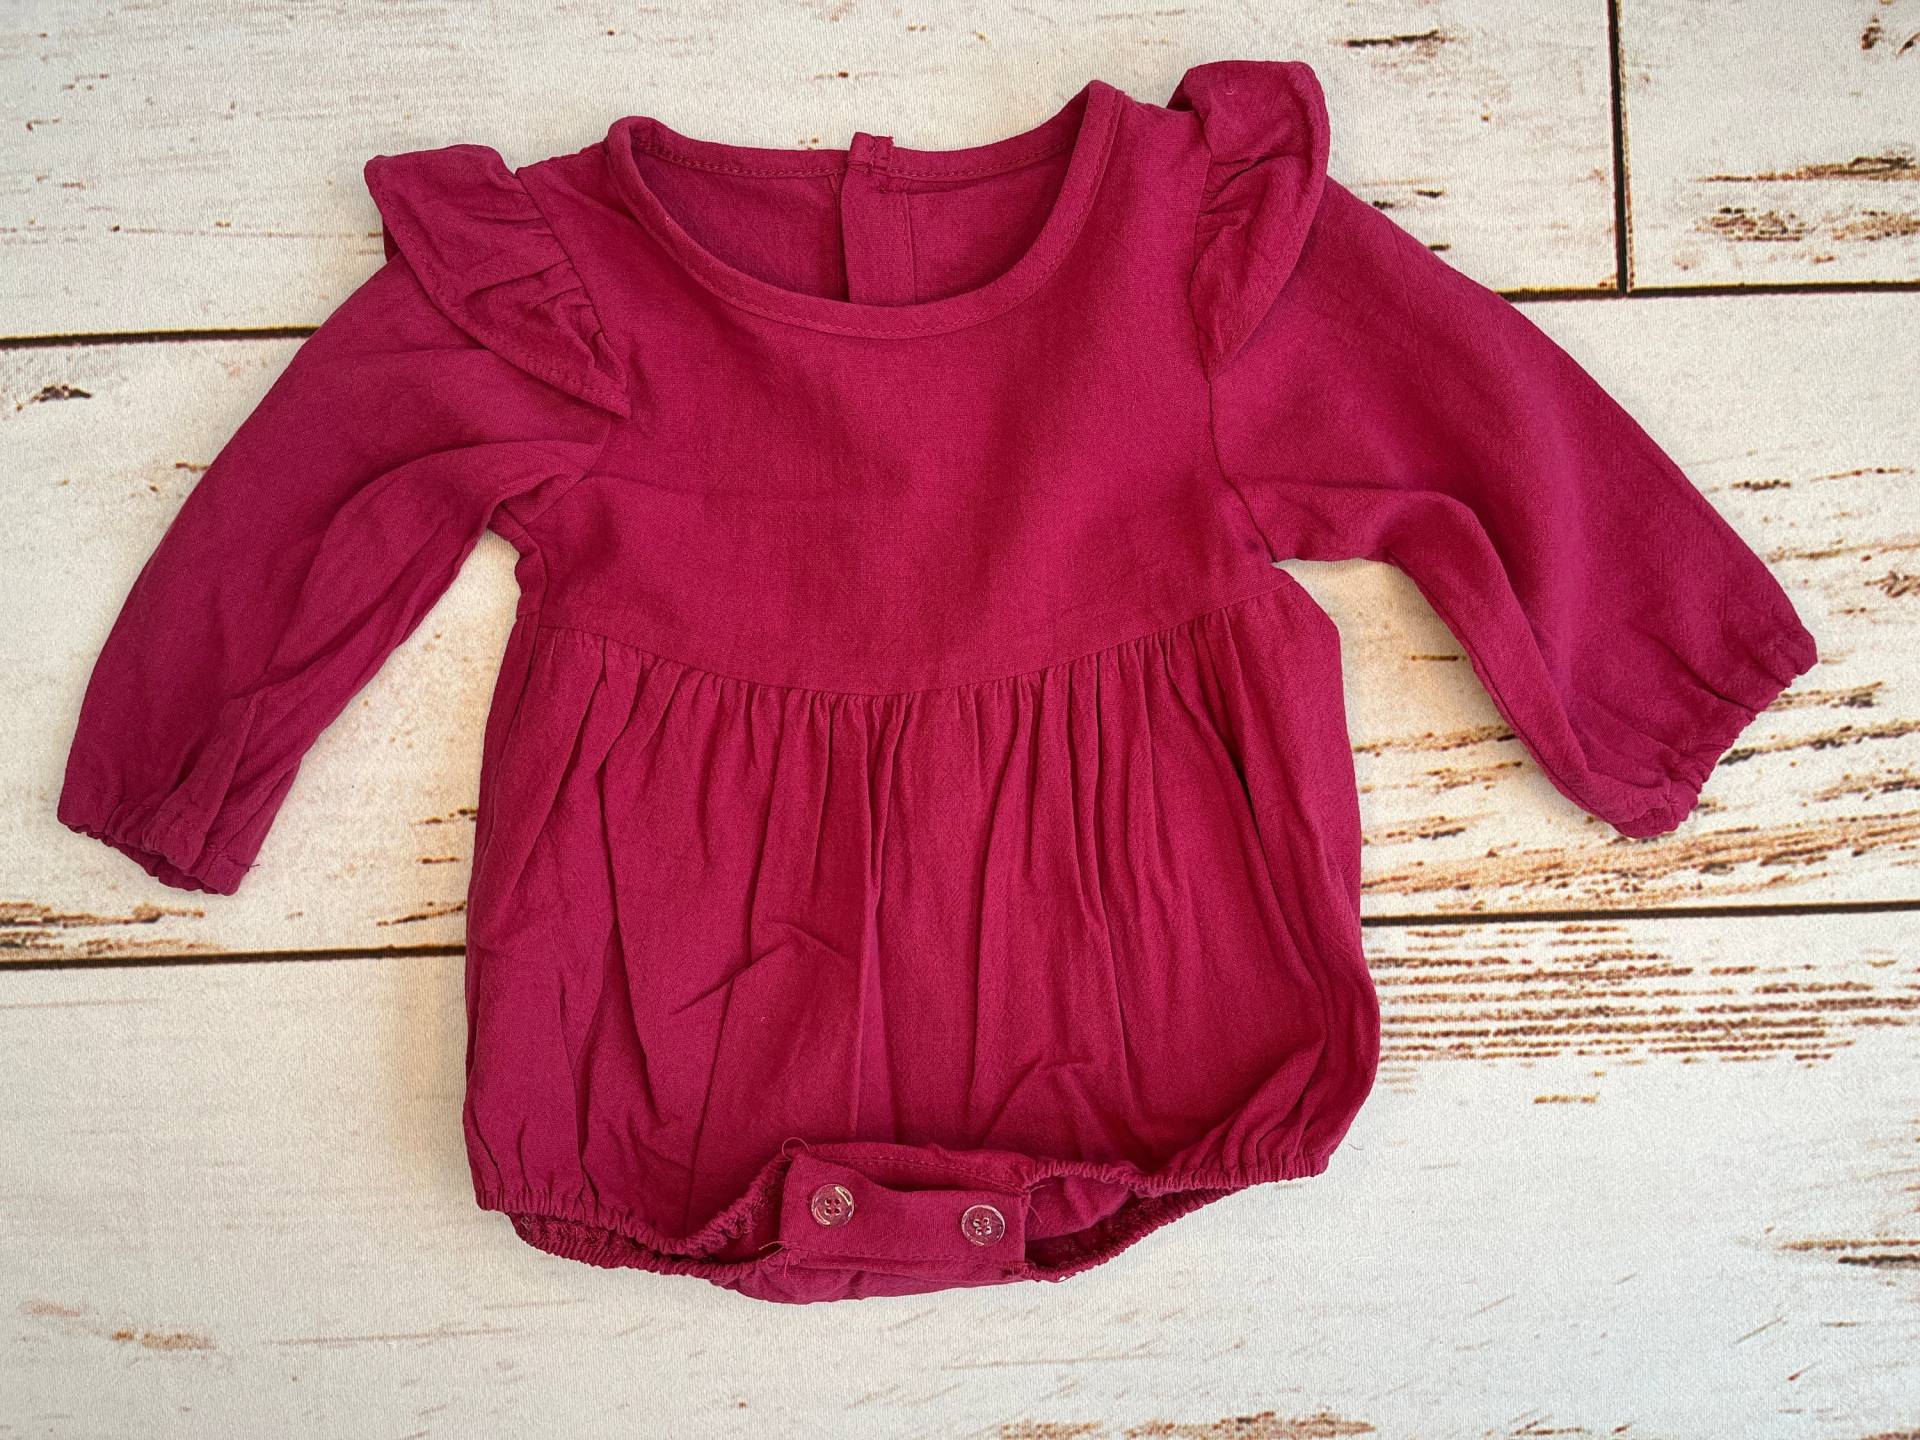 Baby Mädchen Langarm Lila Herbst Strampler Für | Säugling Kleidung Neugeborenen Coming Home Outfit von RileyGraceFashion